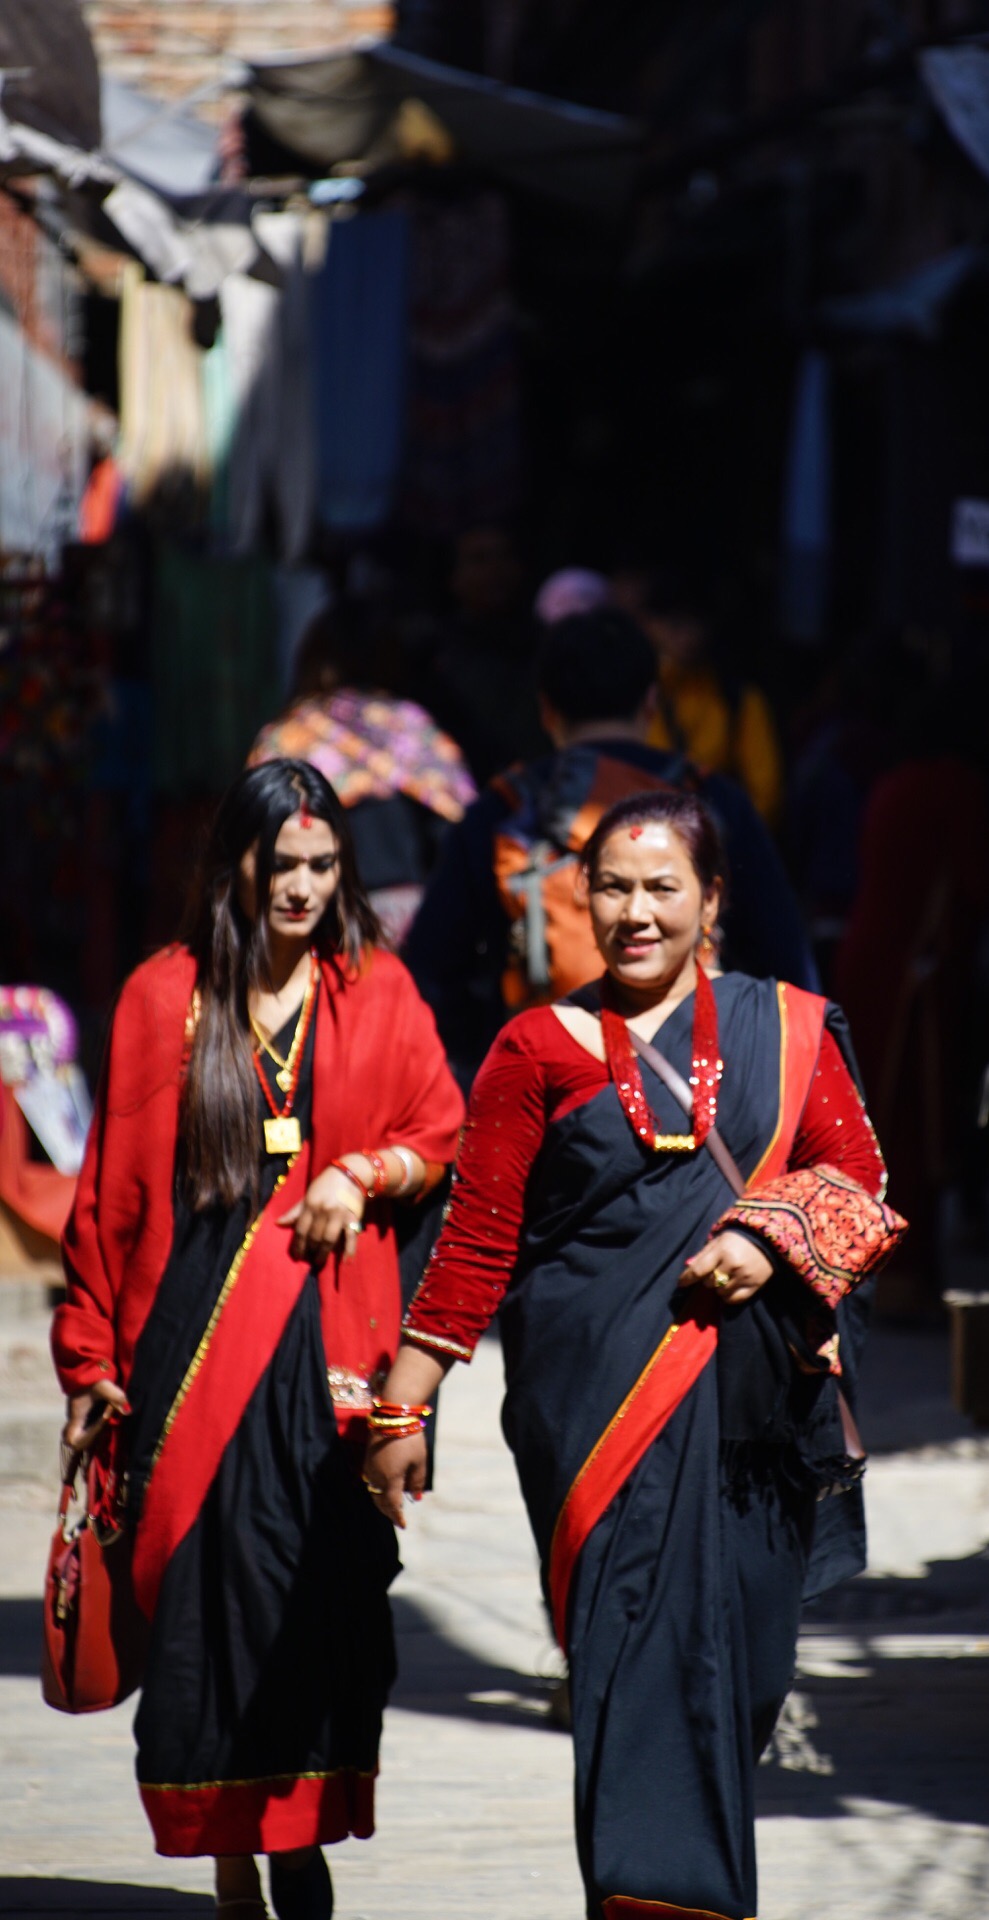 尼泊尔众生相，迷人的笑容